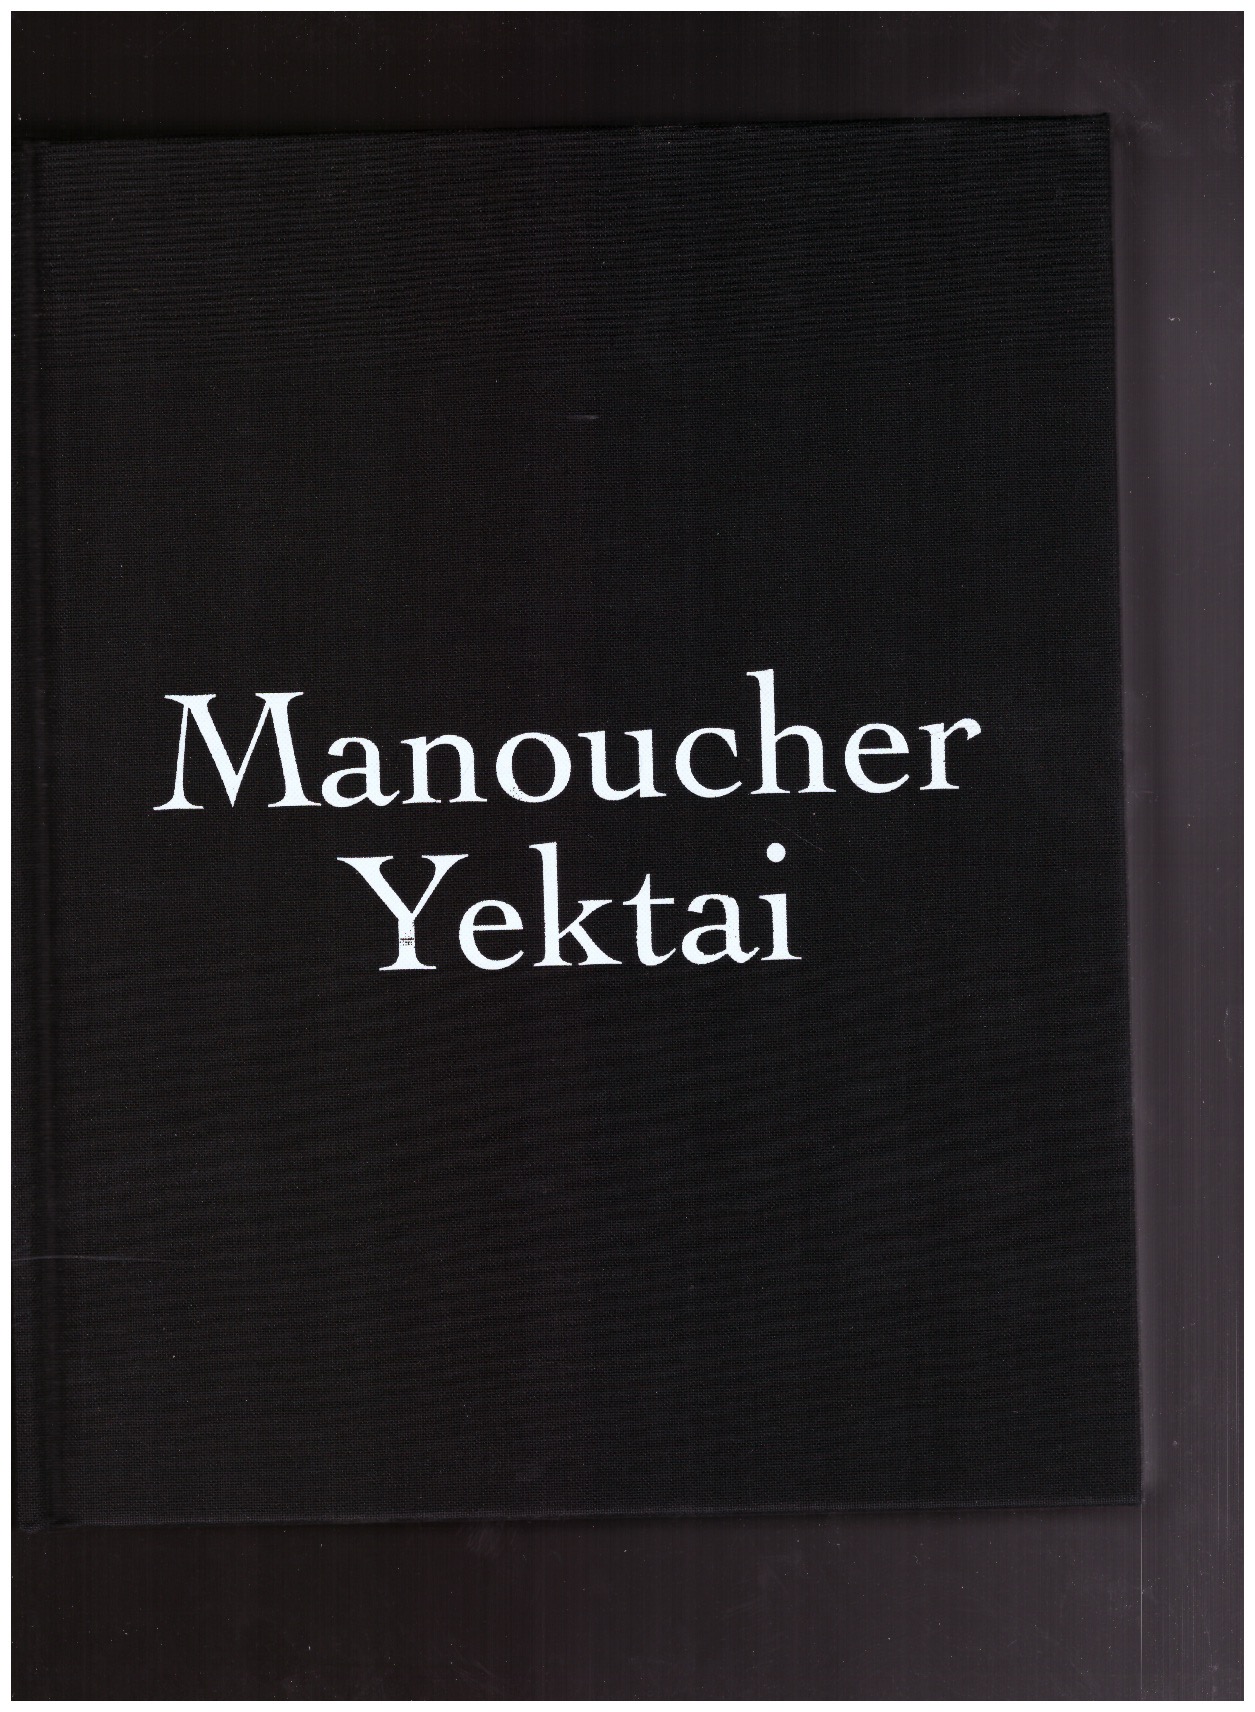 YEKTAI, Manoucher - Manoucher Yektai